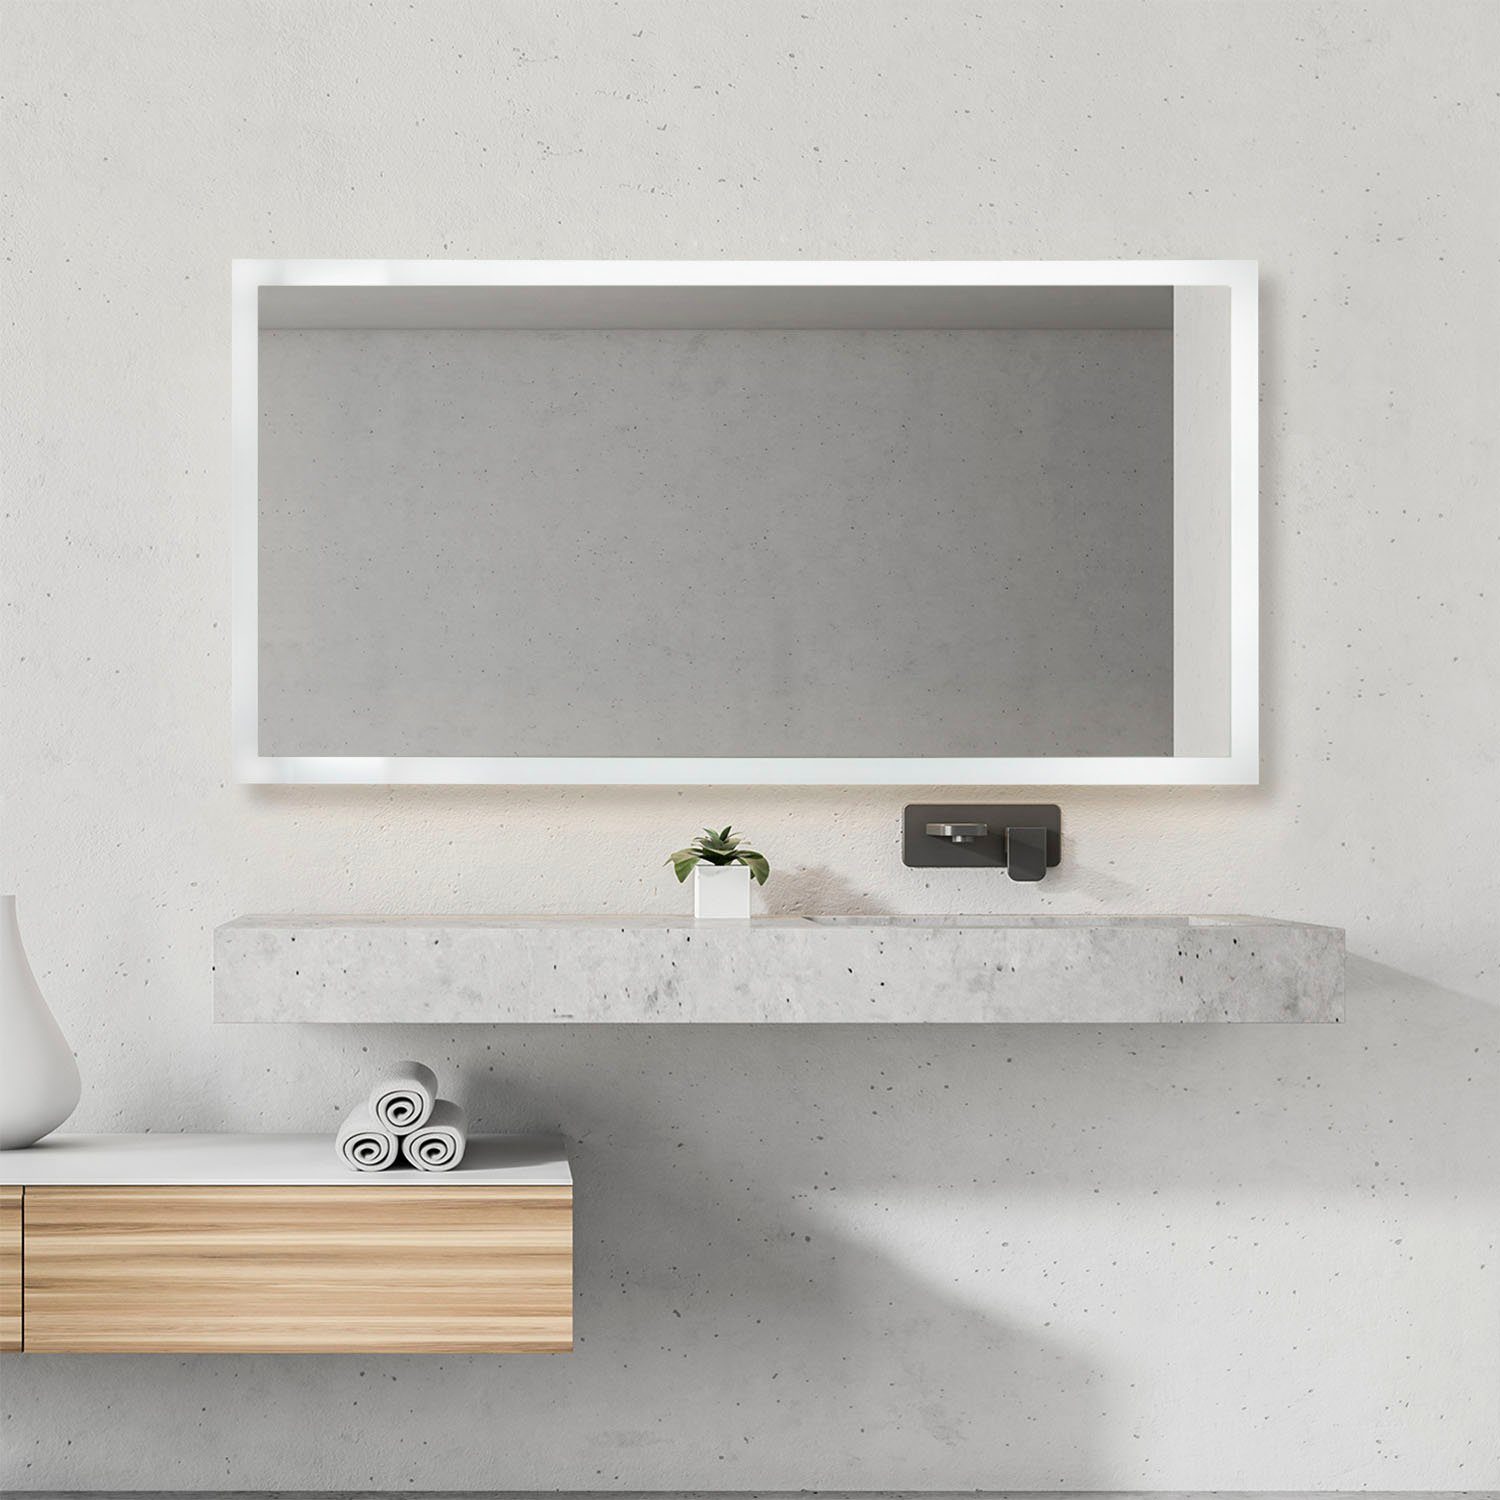 Neutralweiß, BECKY, 4000 Home Touch-Schalter Wandspiegel fest Backlight LED LED Paco K Wandleuchte integriert, Beleuchteter Spiegel